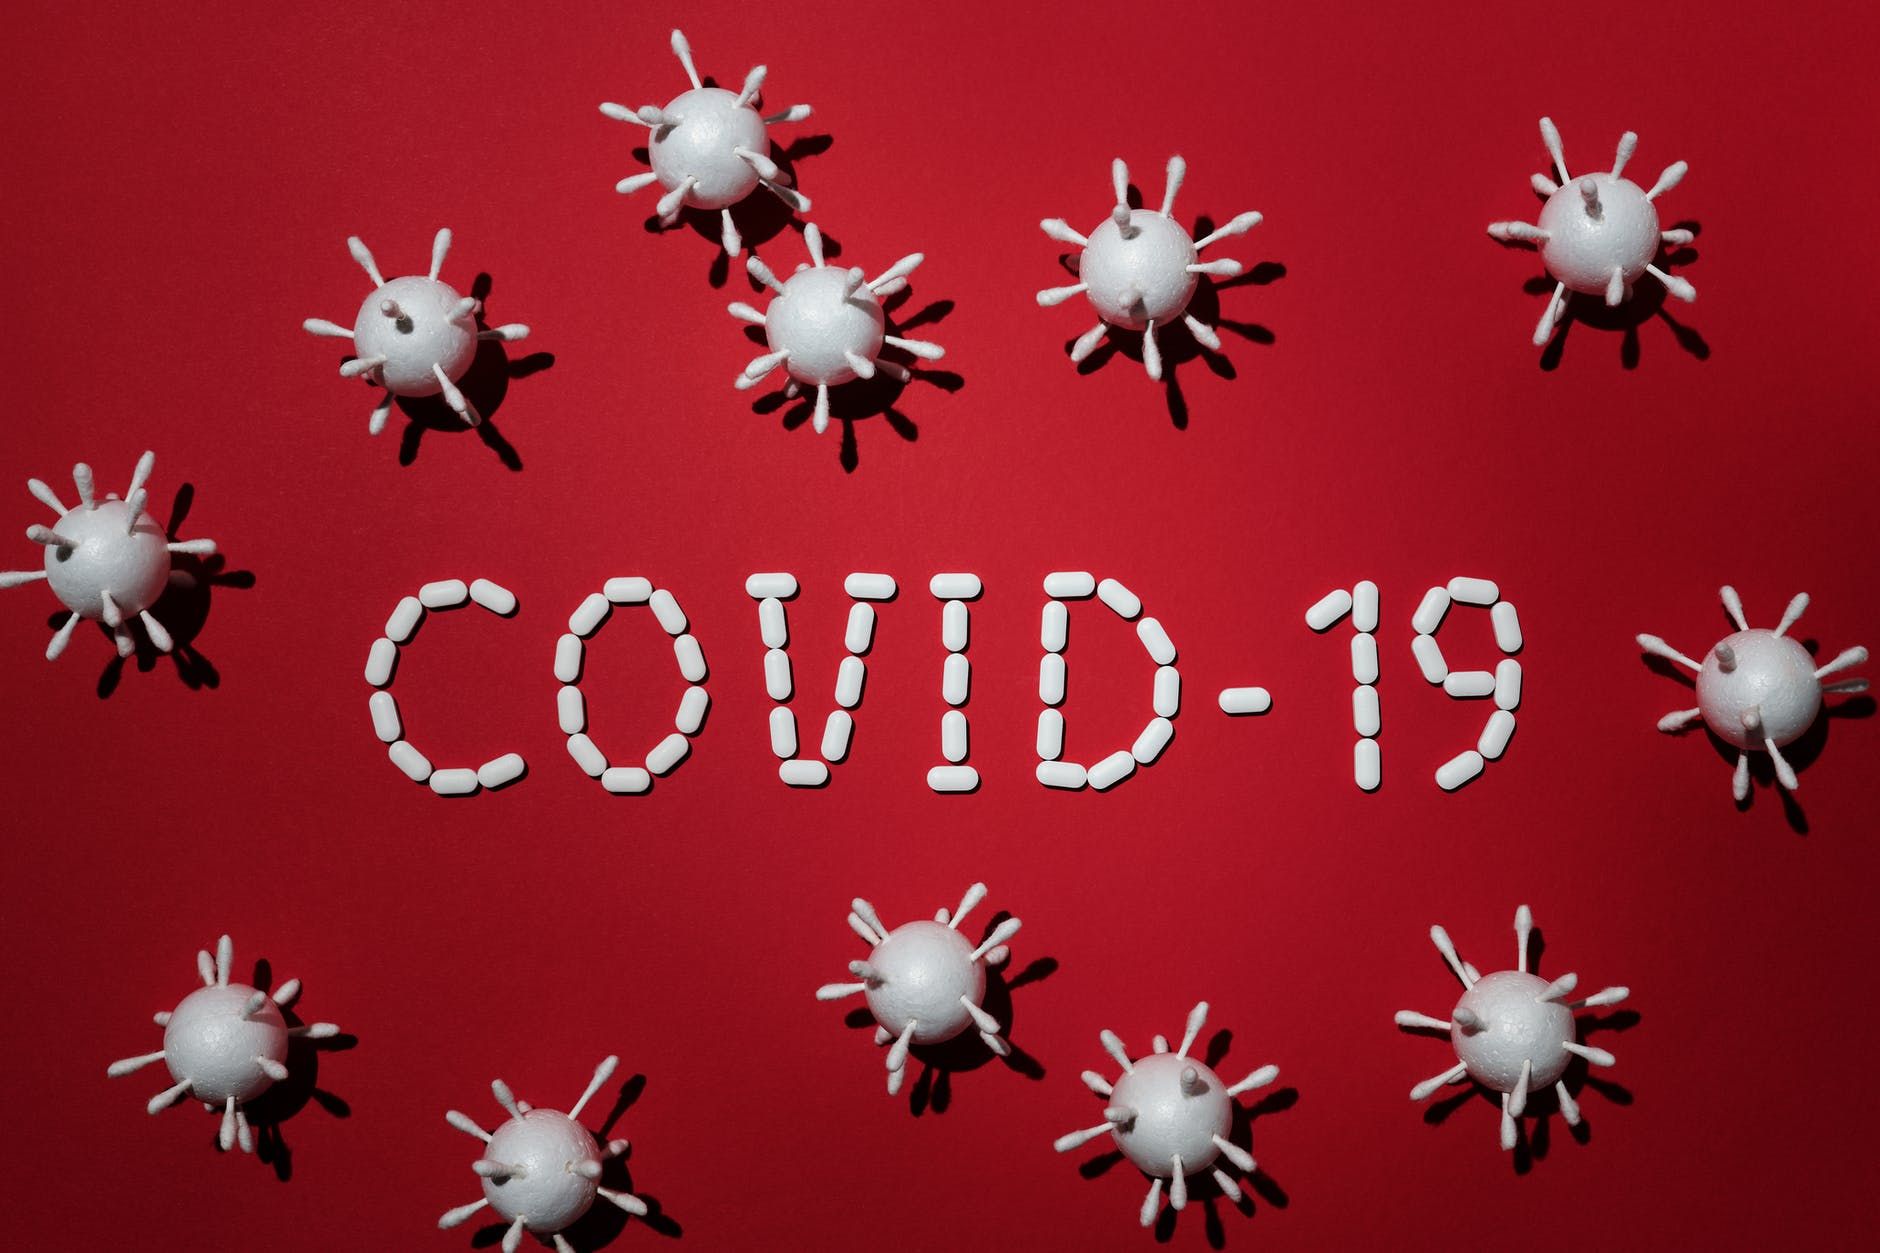 Covid-19, Menguji Kelayakan dan Kepatutan Pejabat Publik